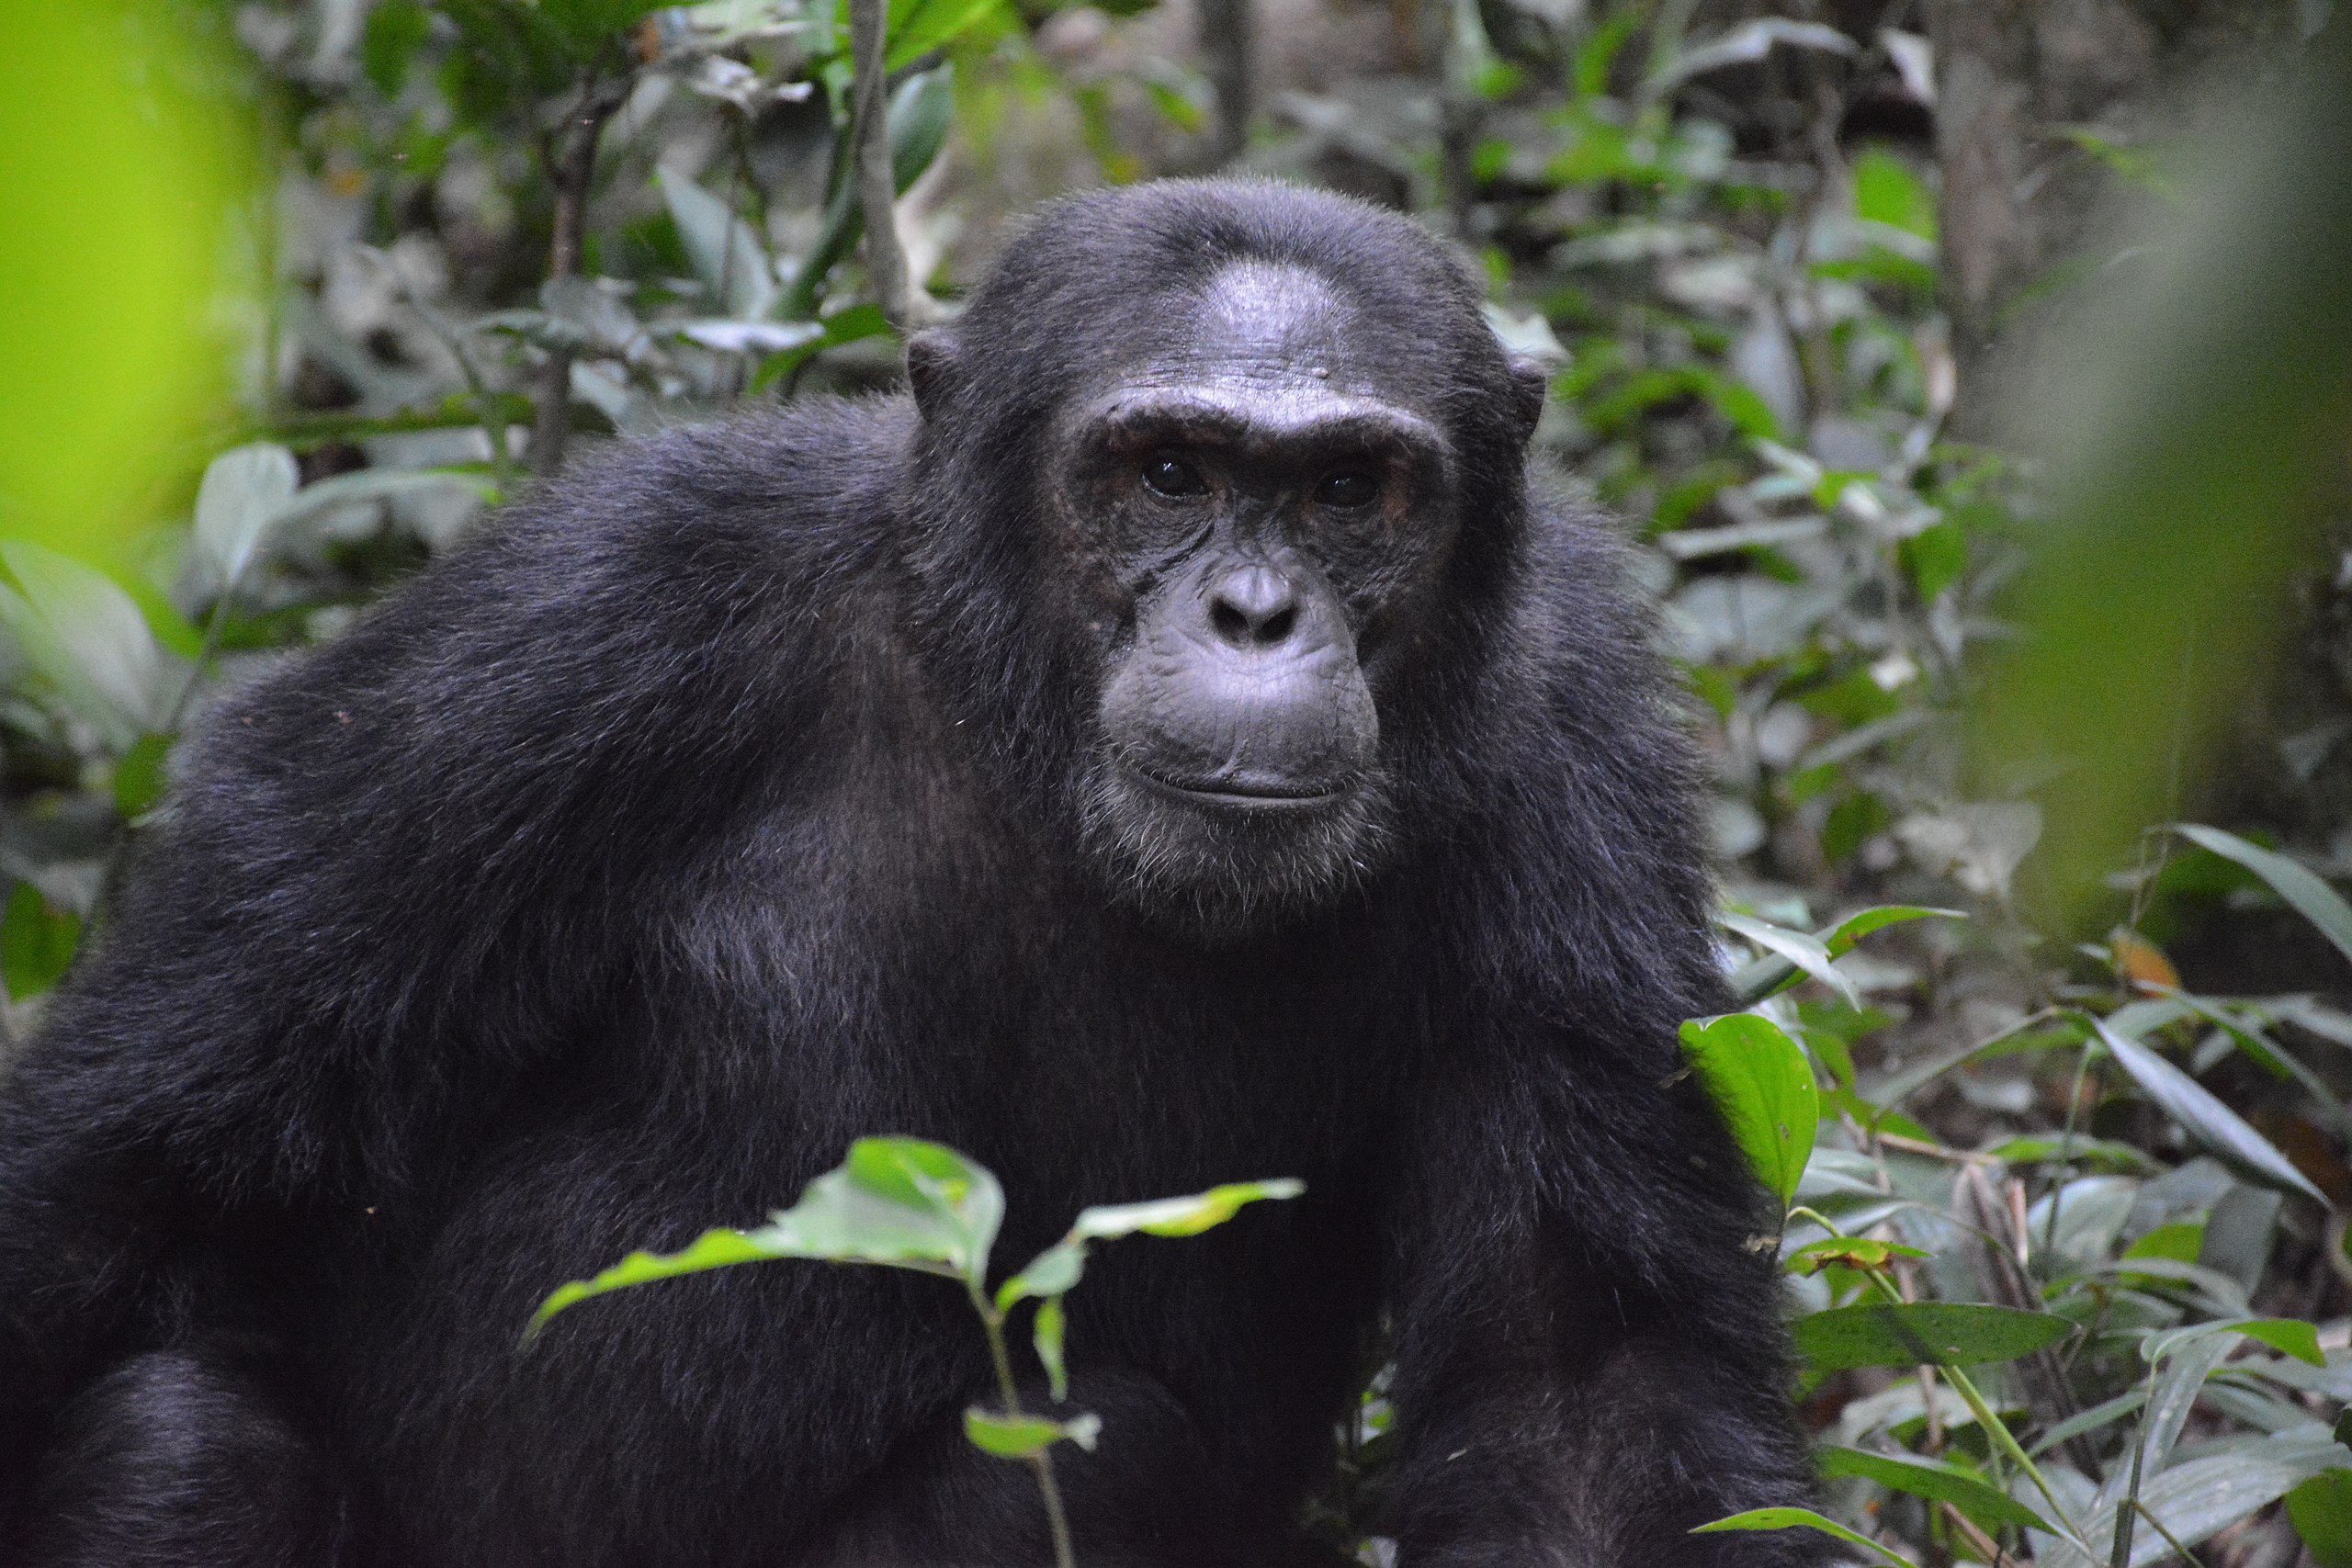 Αττικό Ζωολογικό Πάρκο: Σκότωσαν χιμπατζή που διέφυγε από τον χώρο του